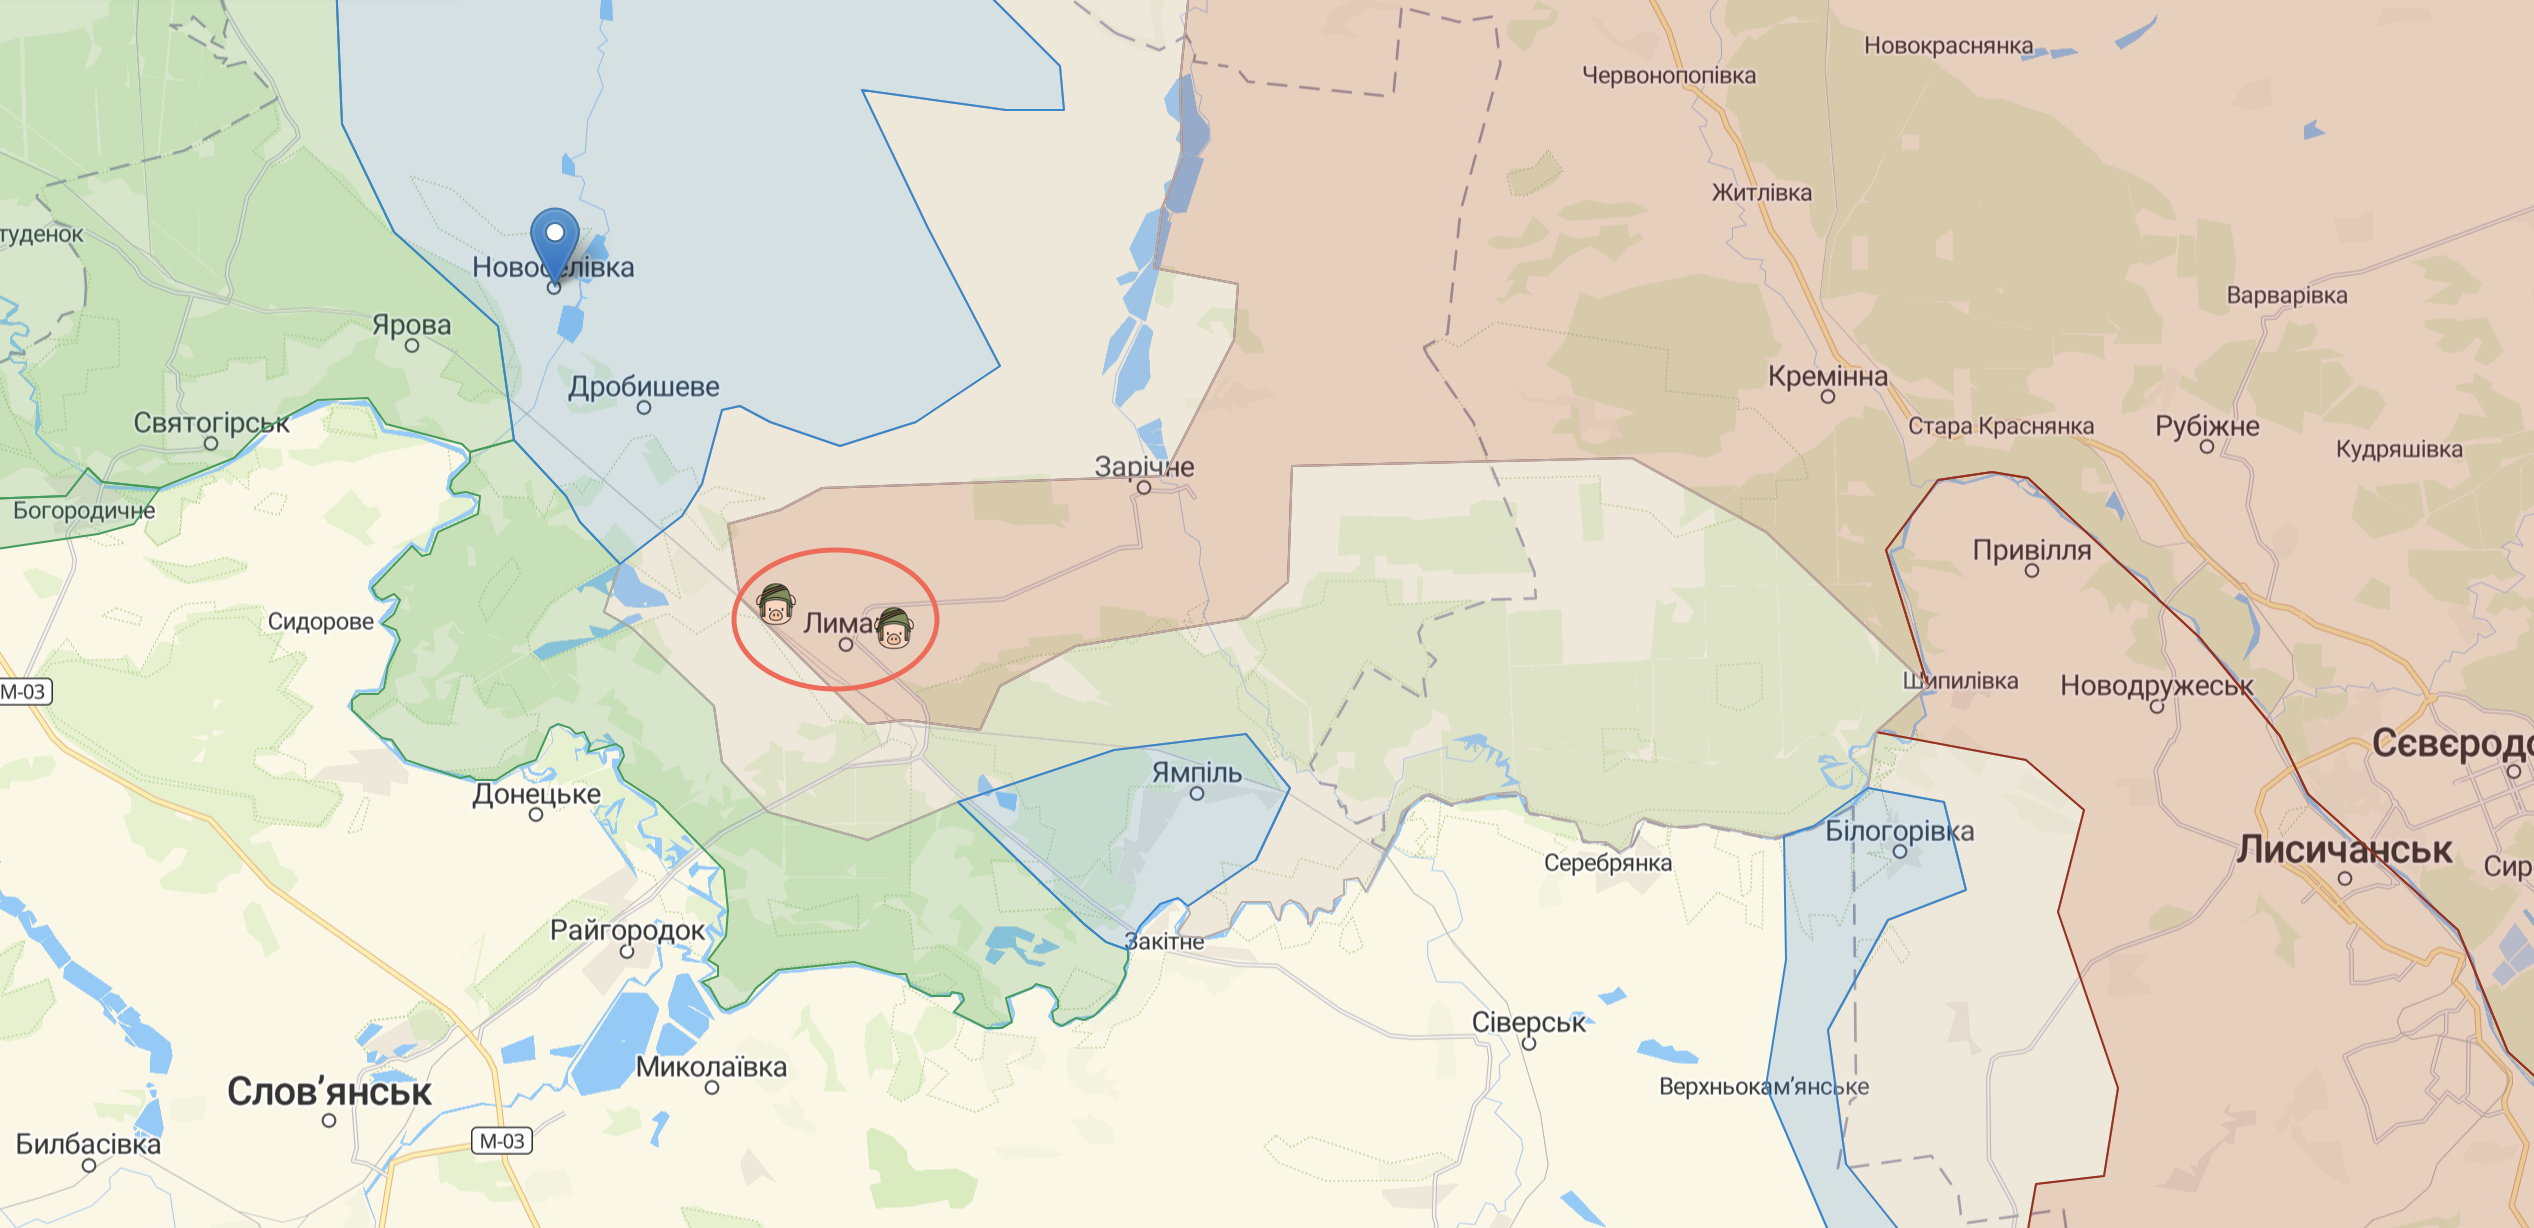 ВСУ подтвердили освобождение 5 населенных пунктов возле Лимана: что там происходит